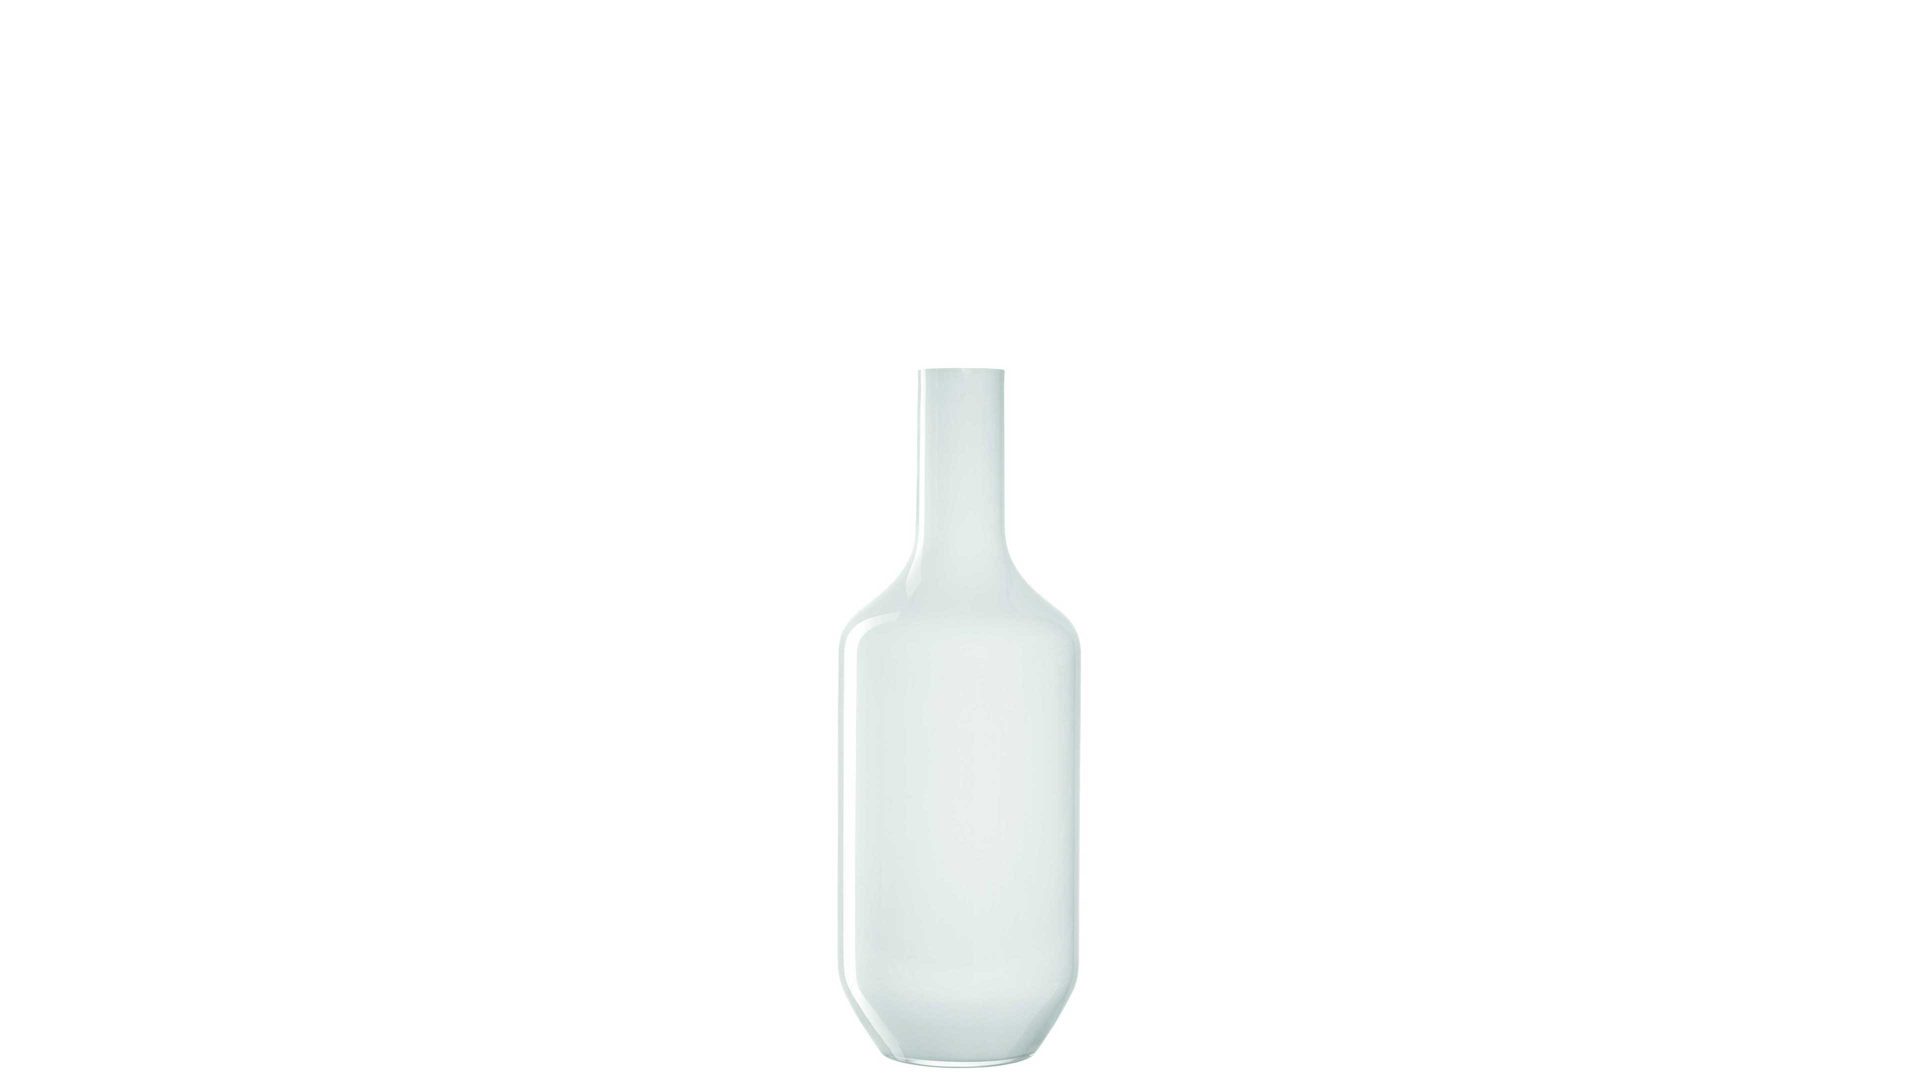 Vase Leonardo | glaskoch aus Glas in Weiß LEONARDO Vase Milano weißes Glas – Höhe ca. 39 cm